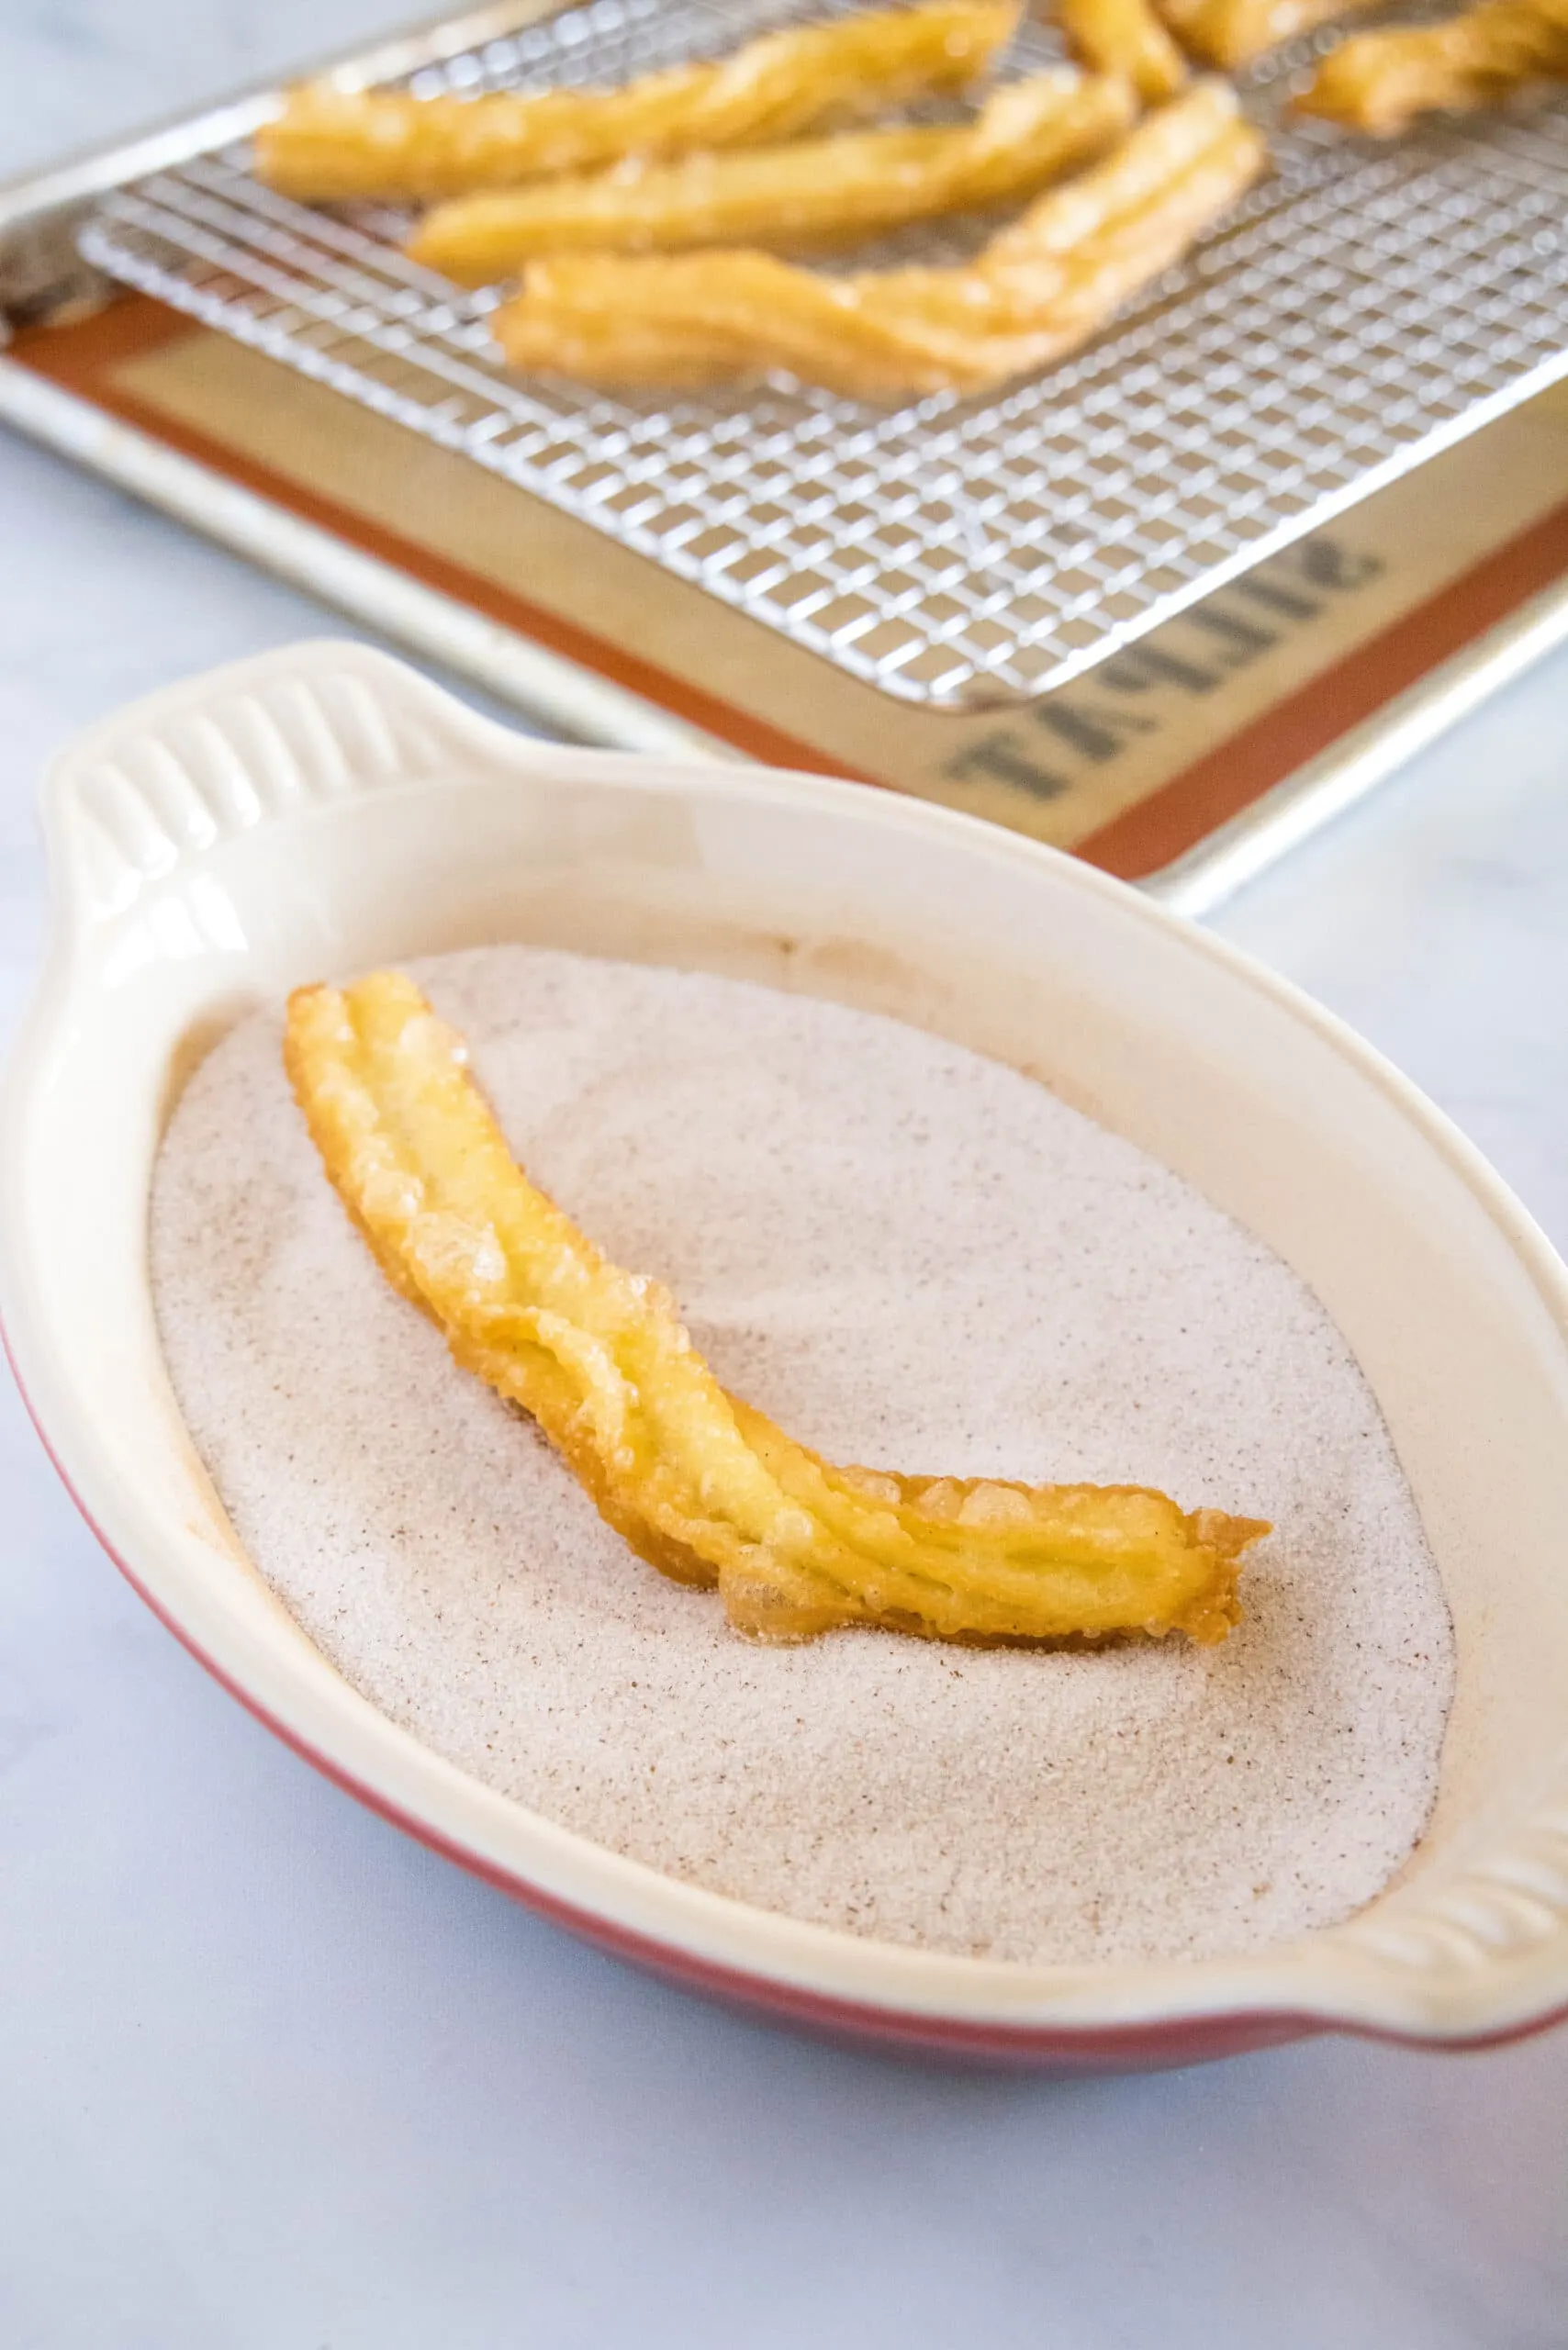 fried churro being tossed in cinnamon sugar